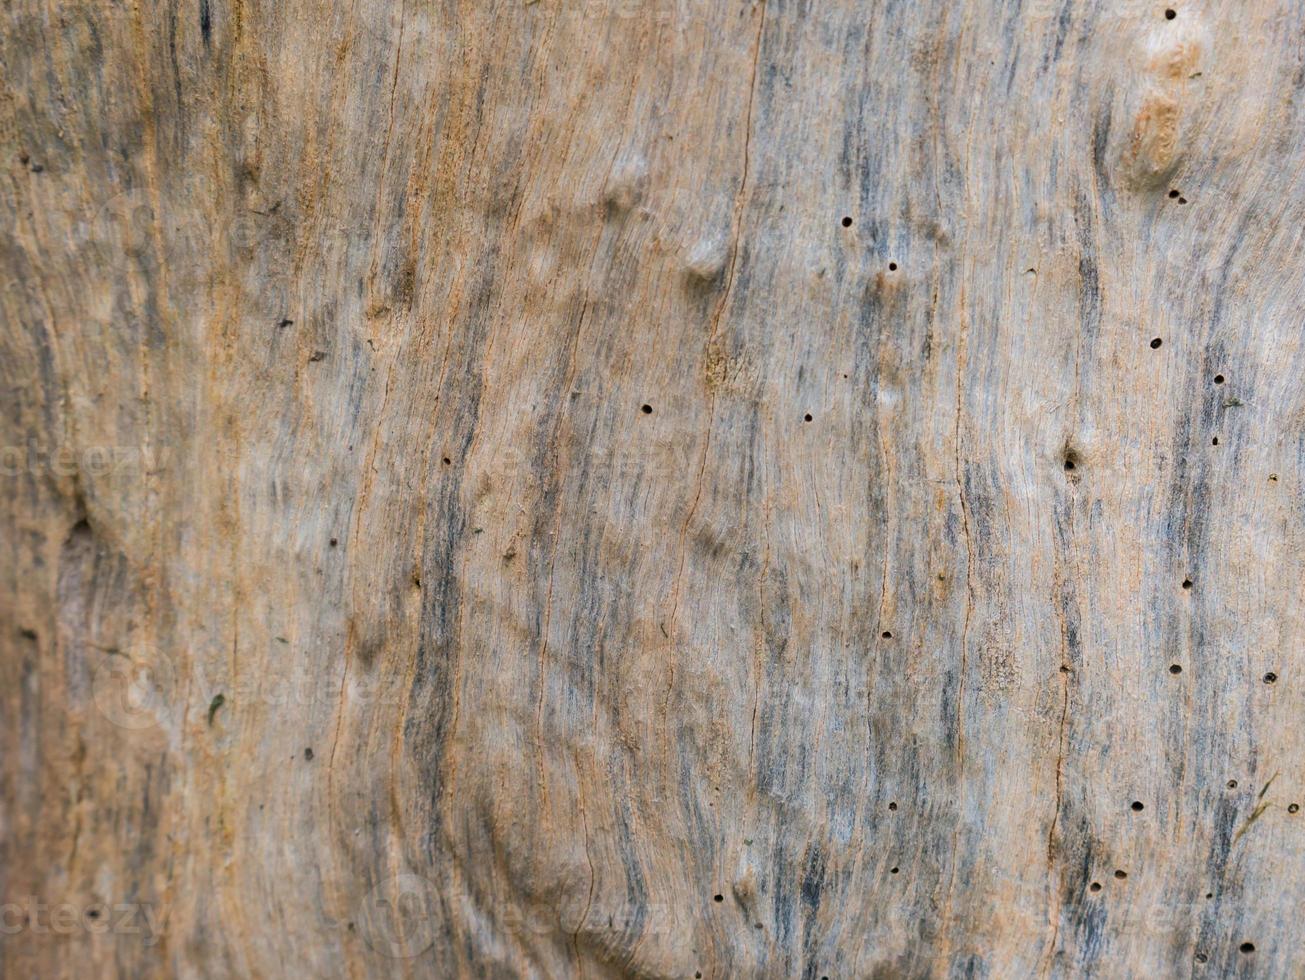 textura de tronco de árbol foto